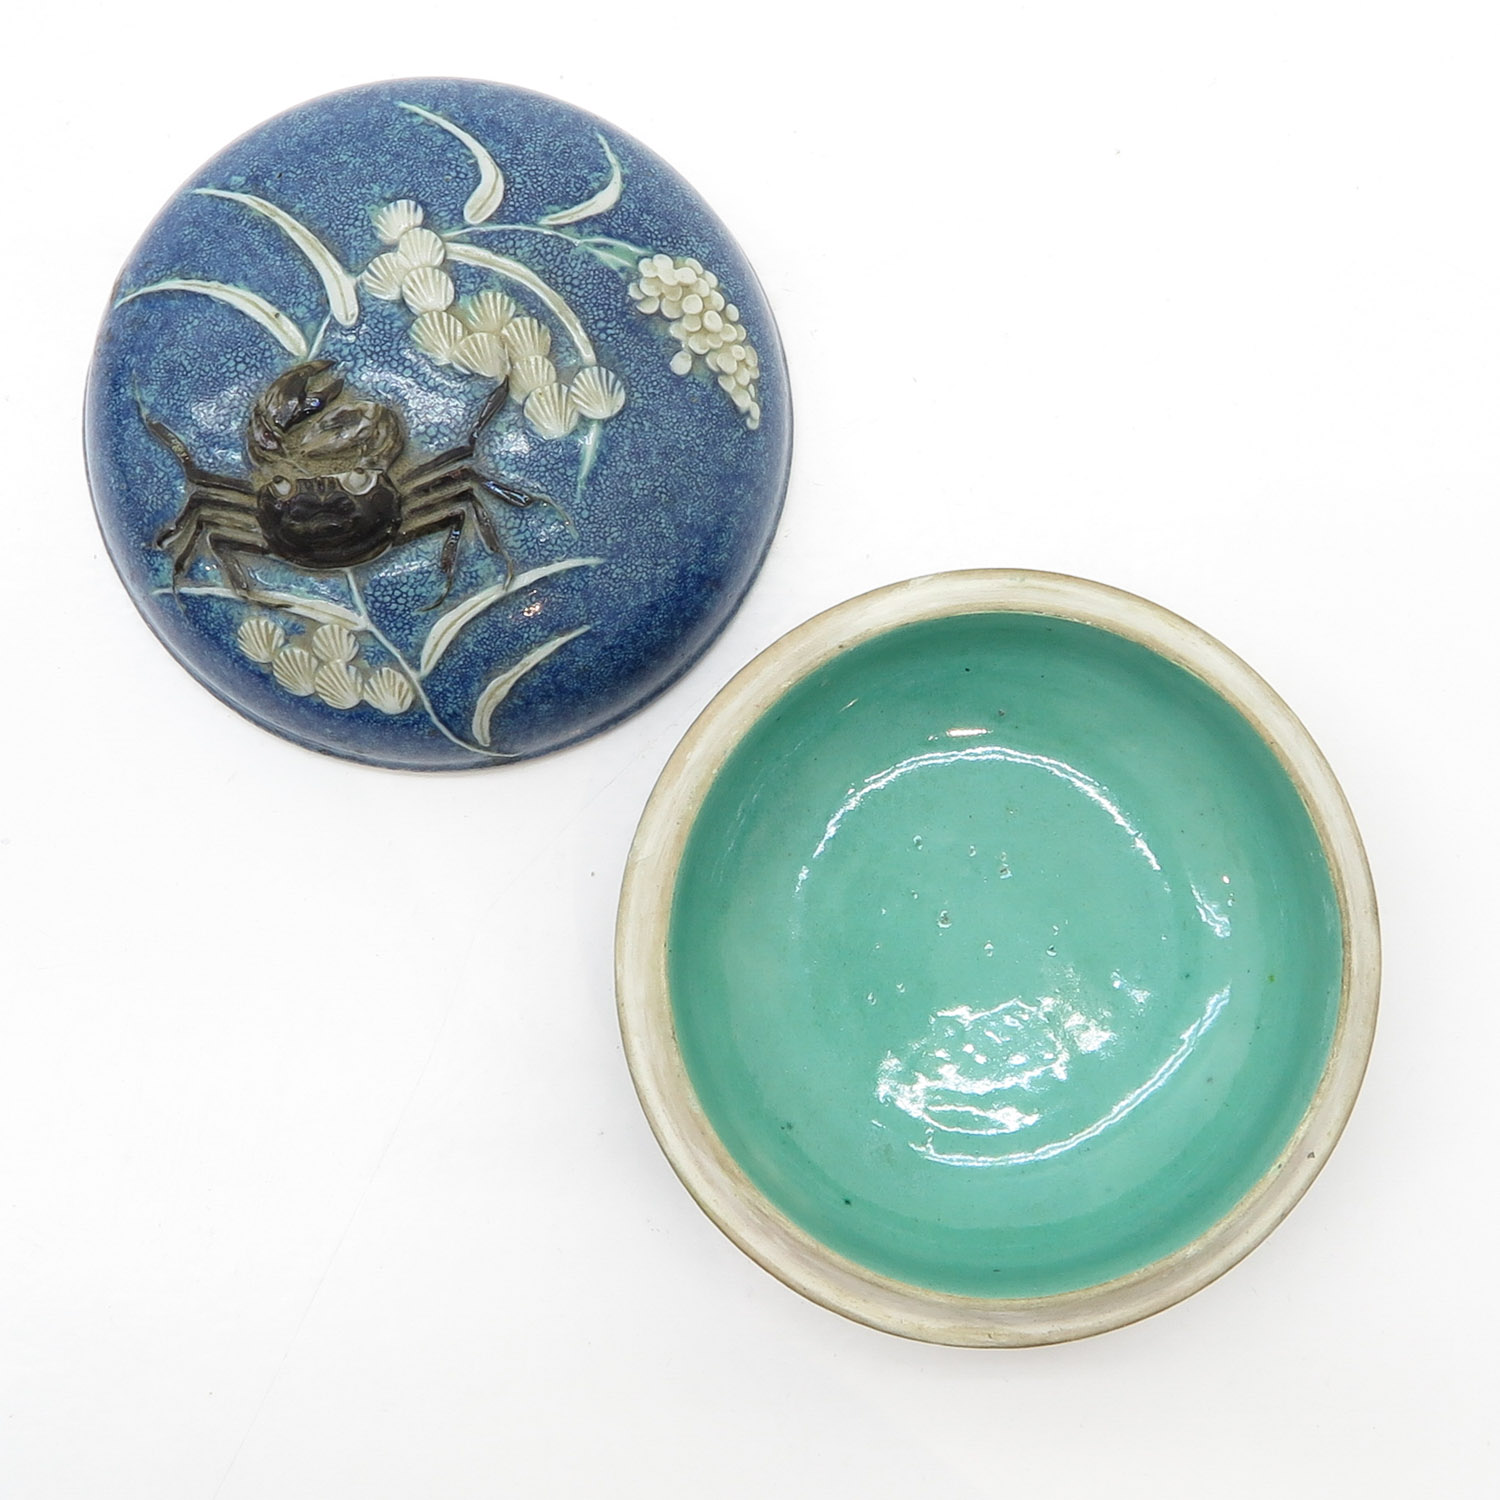 China Porcelain Robins Egg Covered Jar - Image 5 of 6